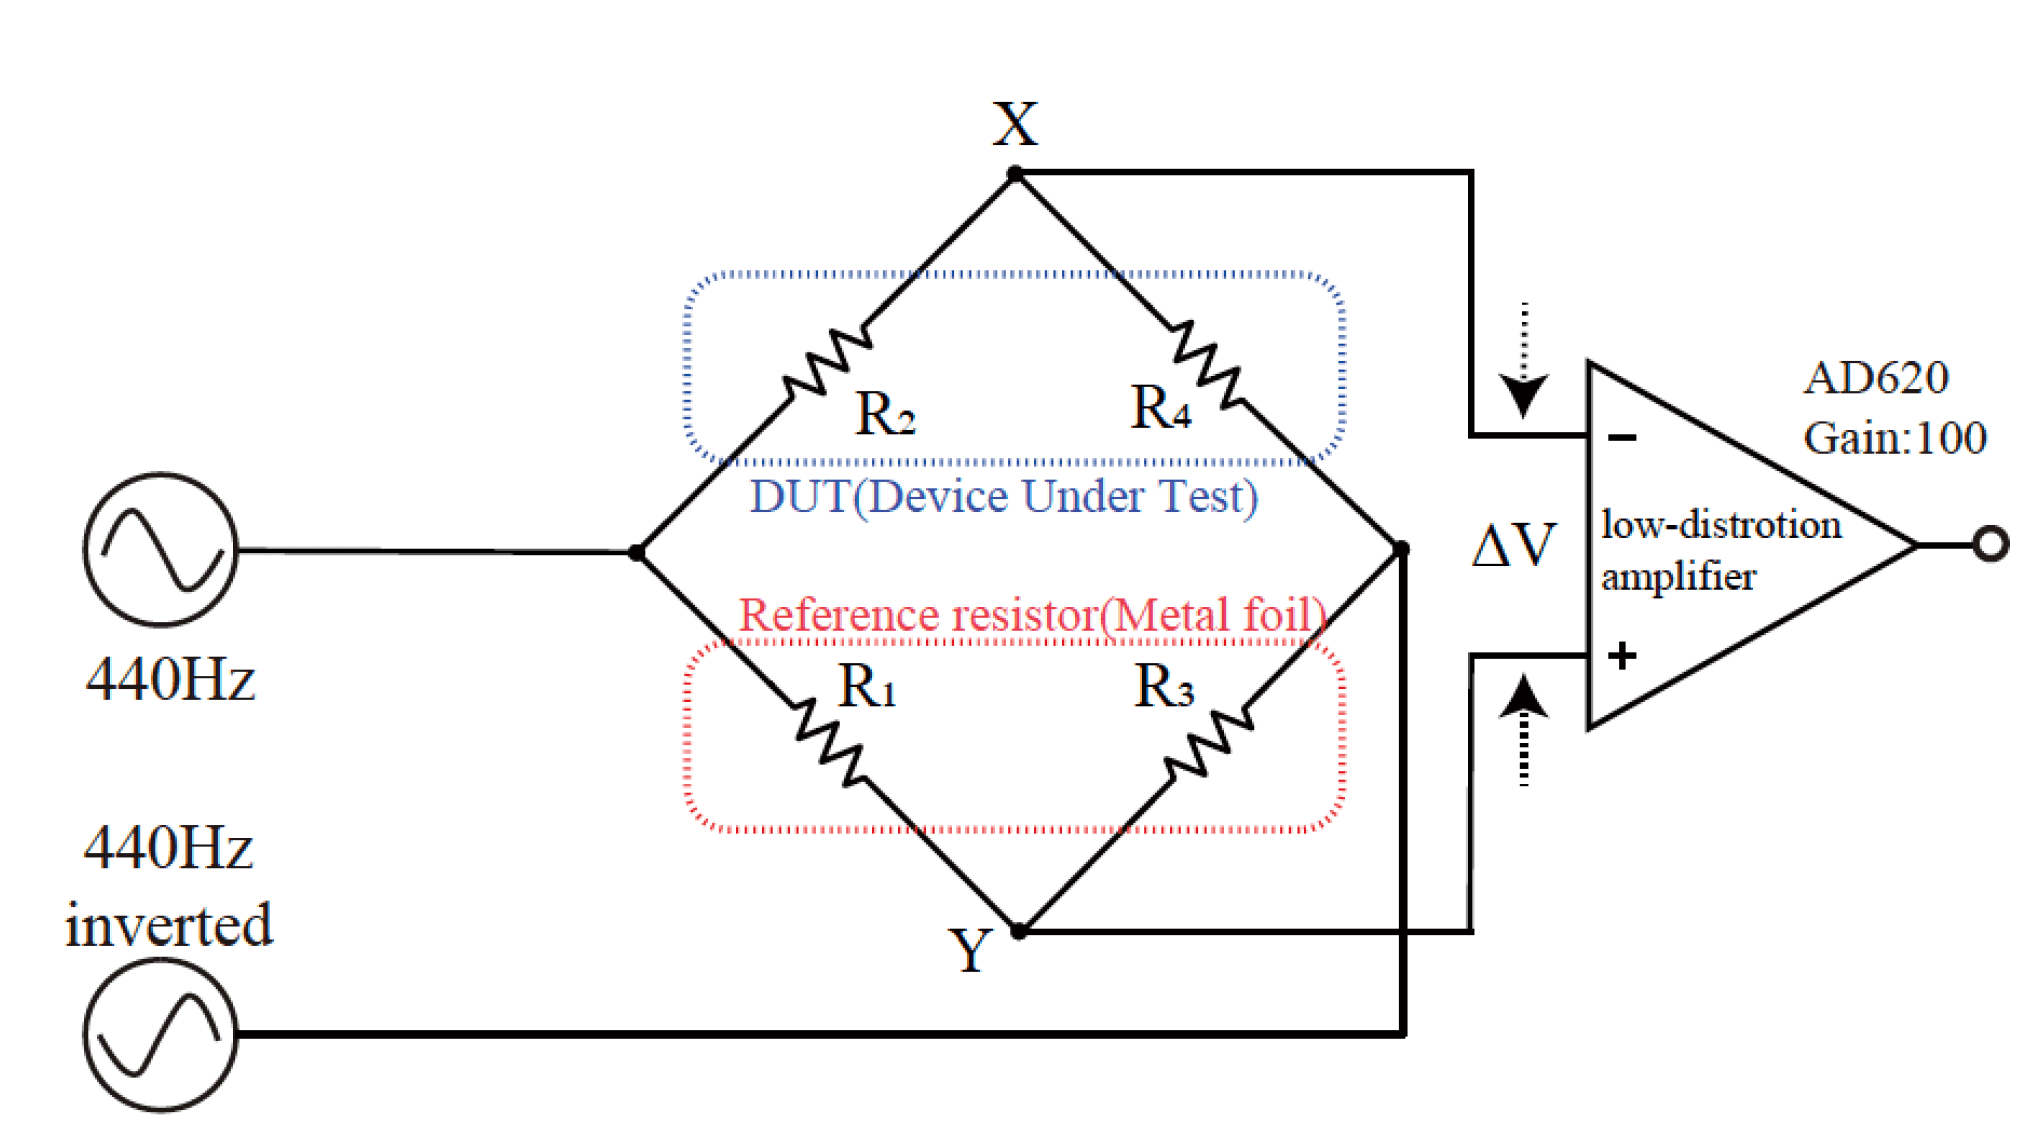 図1 抵抗器の歪み測定回路。ブリッジ回路構成とすることで元信号をキャンセルし歪み成分のみを取り出せる。DUTとリファレンス素子の配置は対辺とする構成もある。